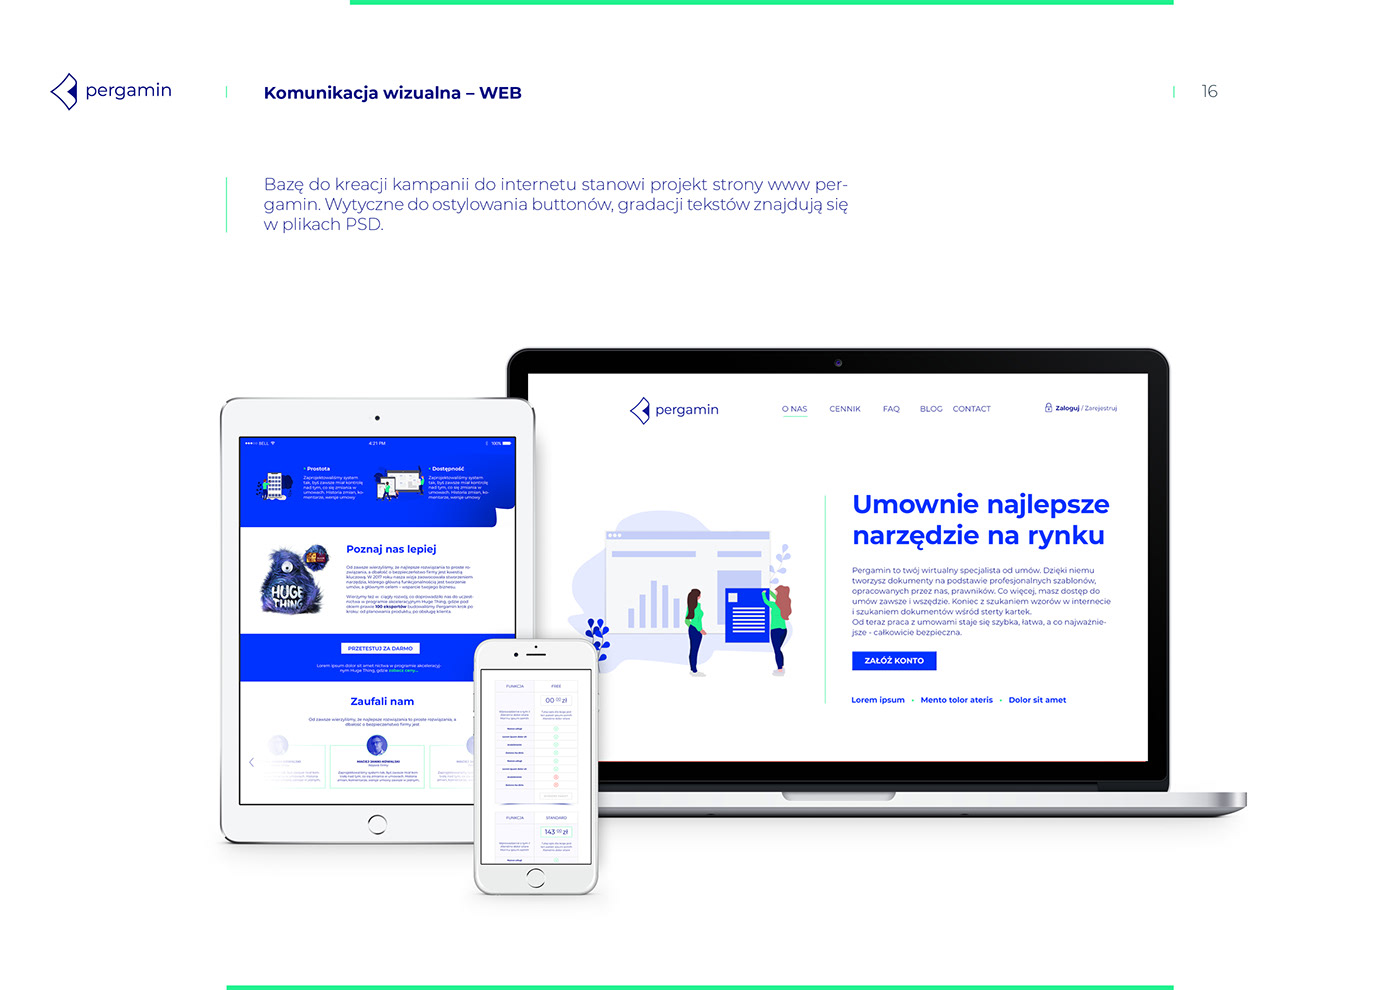 Pergamin identity MACHALSKI Mateusz Machalski  Brand Design app Website klein blue paper Startup